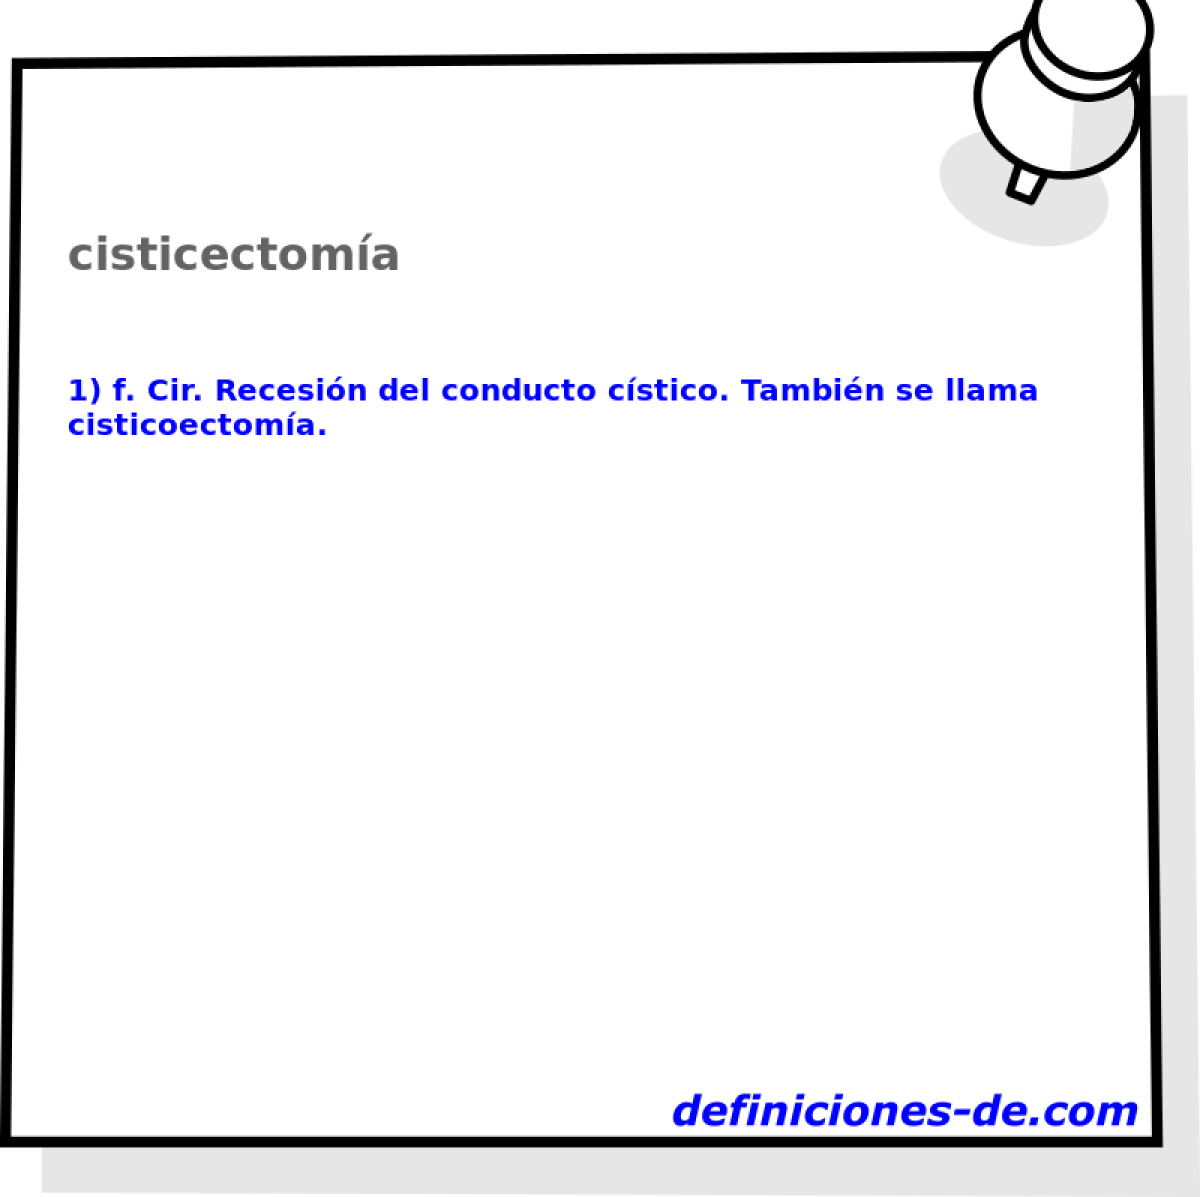 cisticectoma 